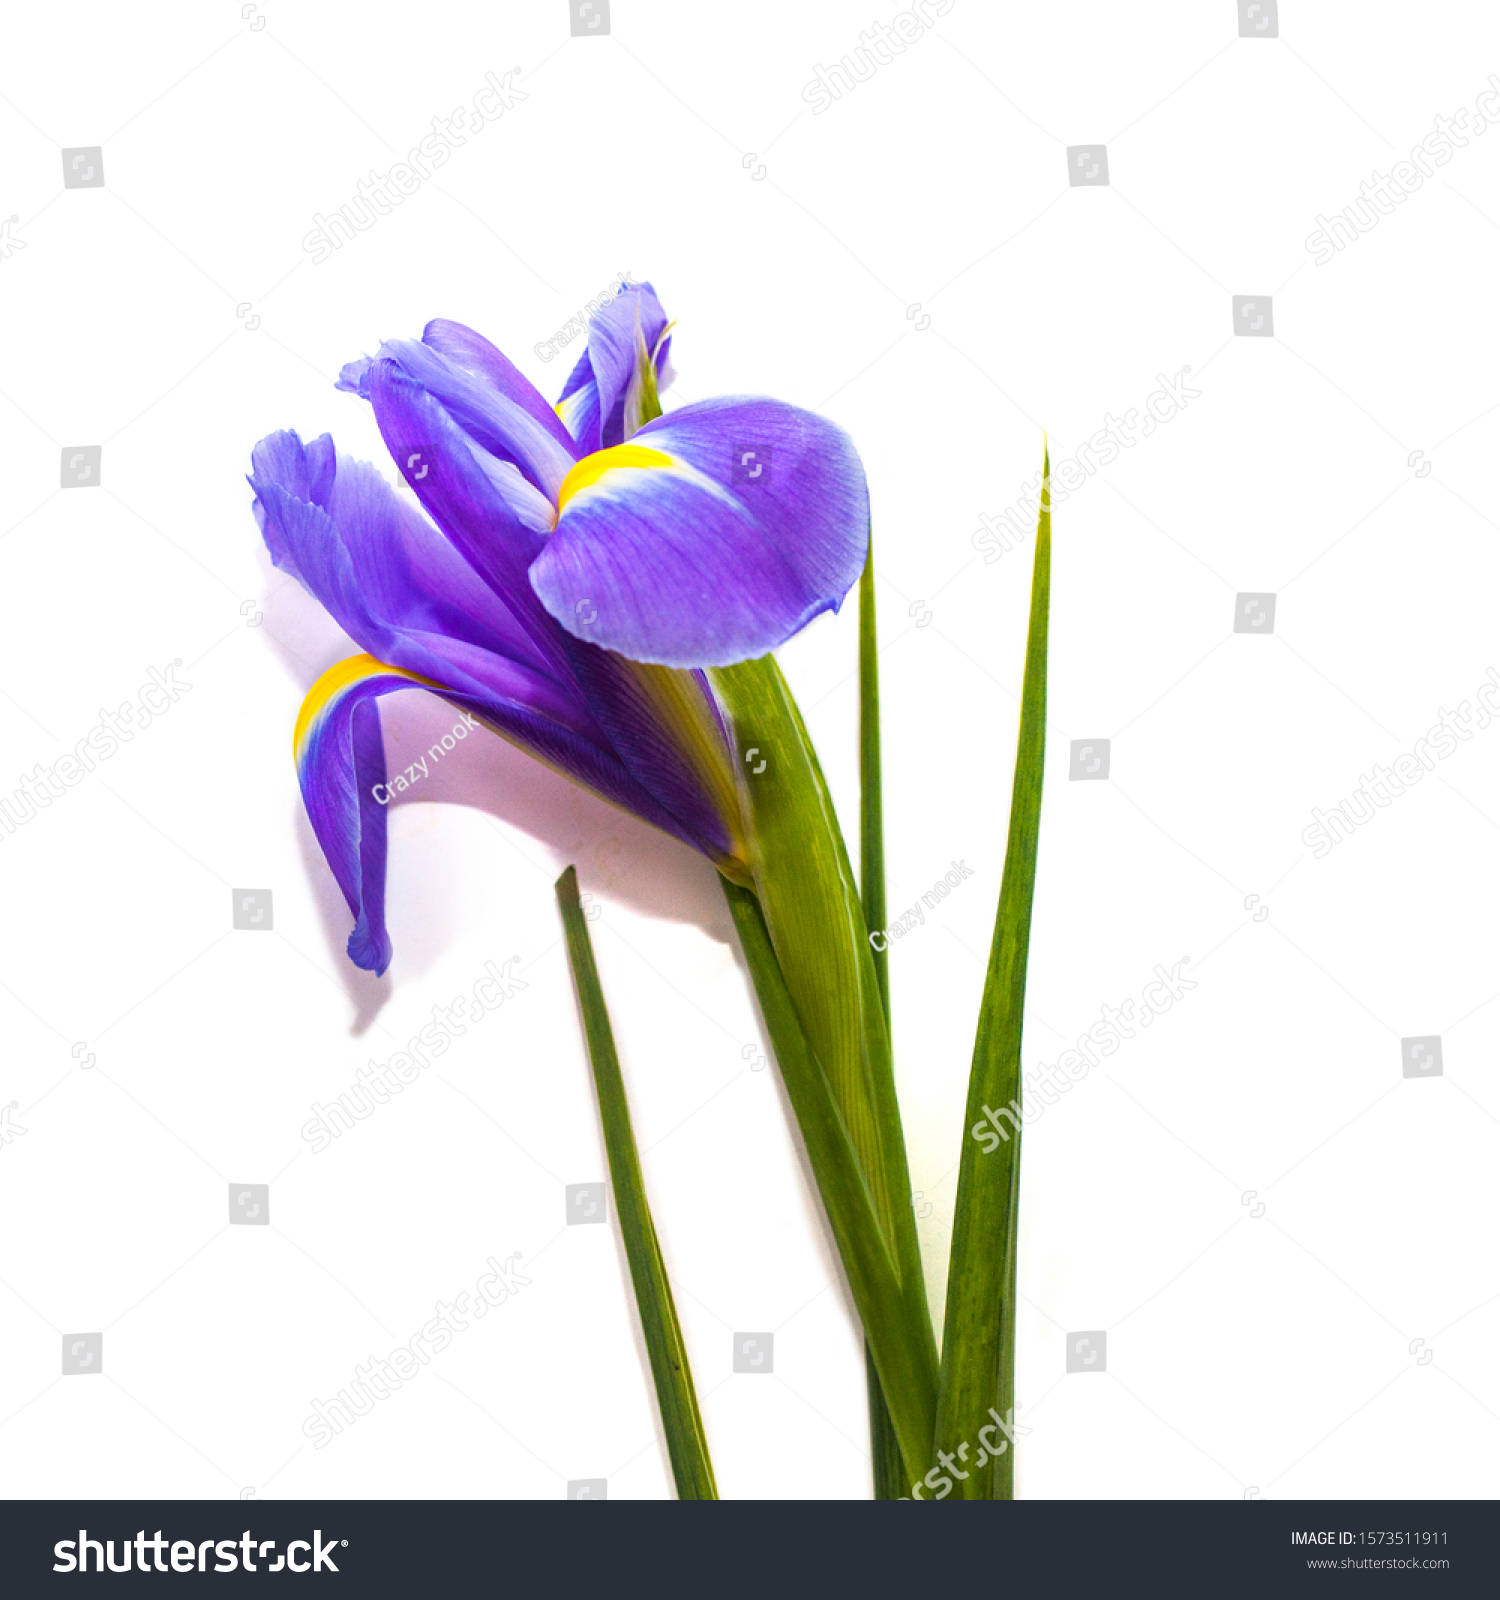 18,18 Spring iris on white background Images, Stock Photos ...